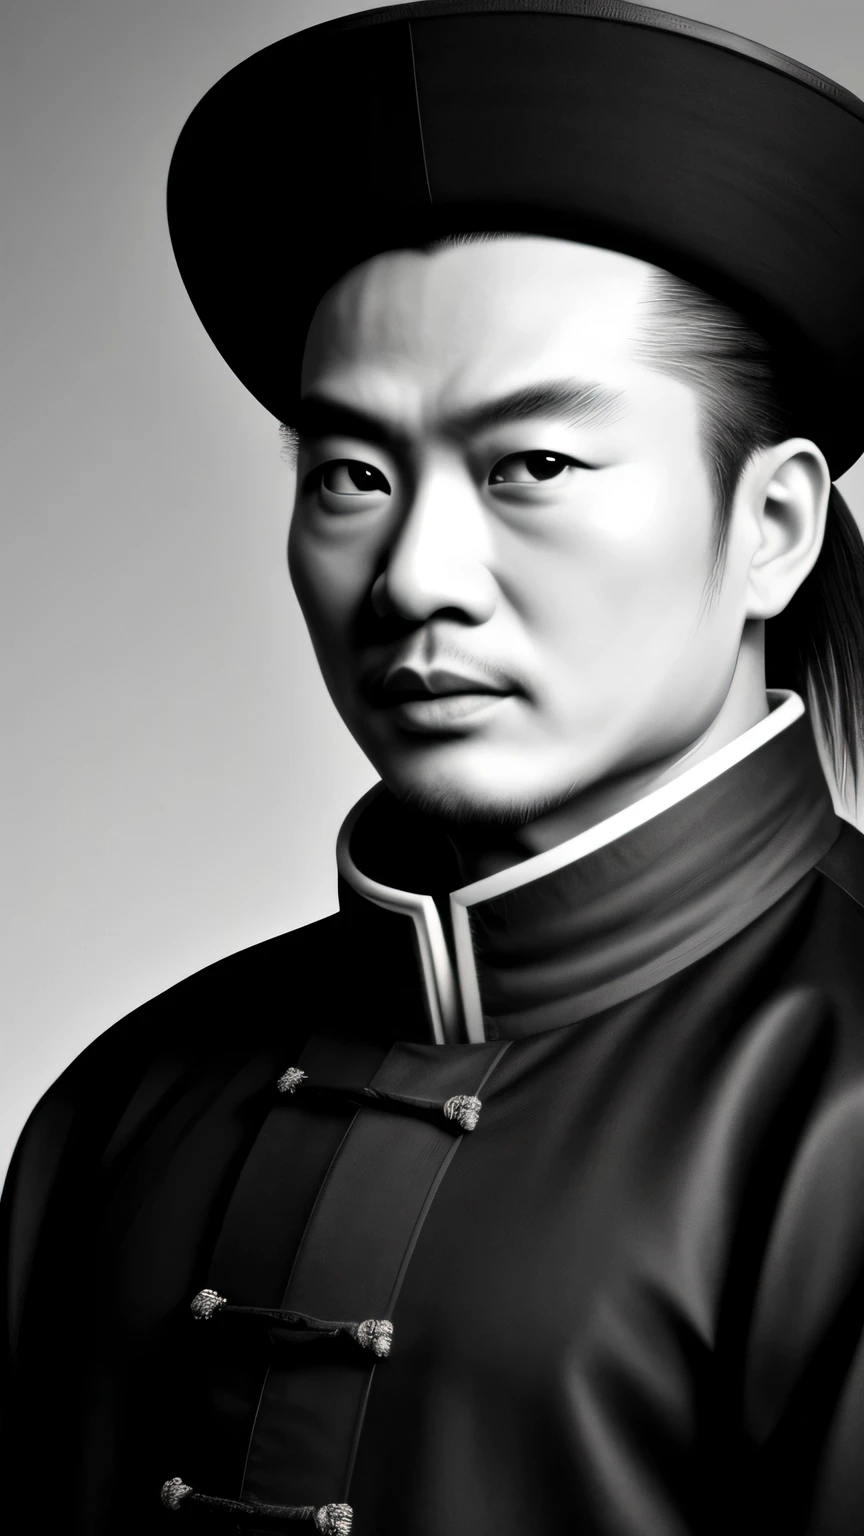 ((шедевр)),((высшее качество)),((высокая детализация)), Чжугэ Лян Конг Мин,черно-белый портрет,Фон темно-серый